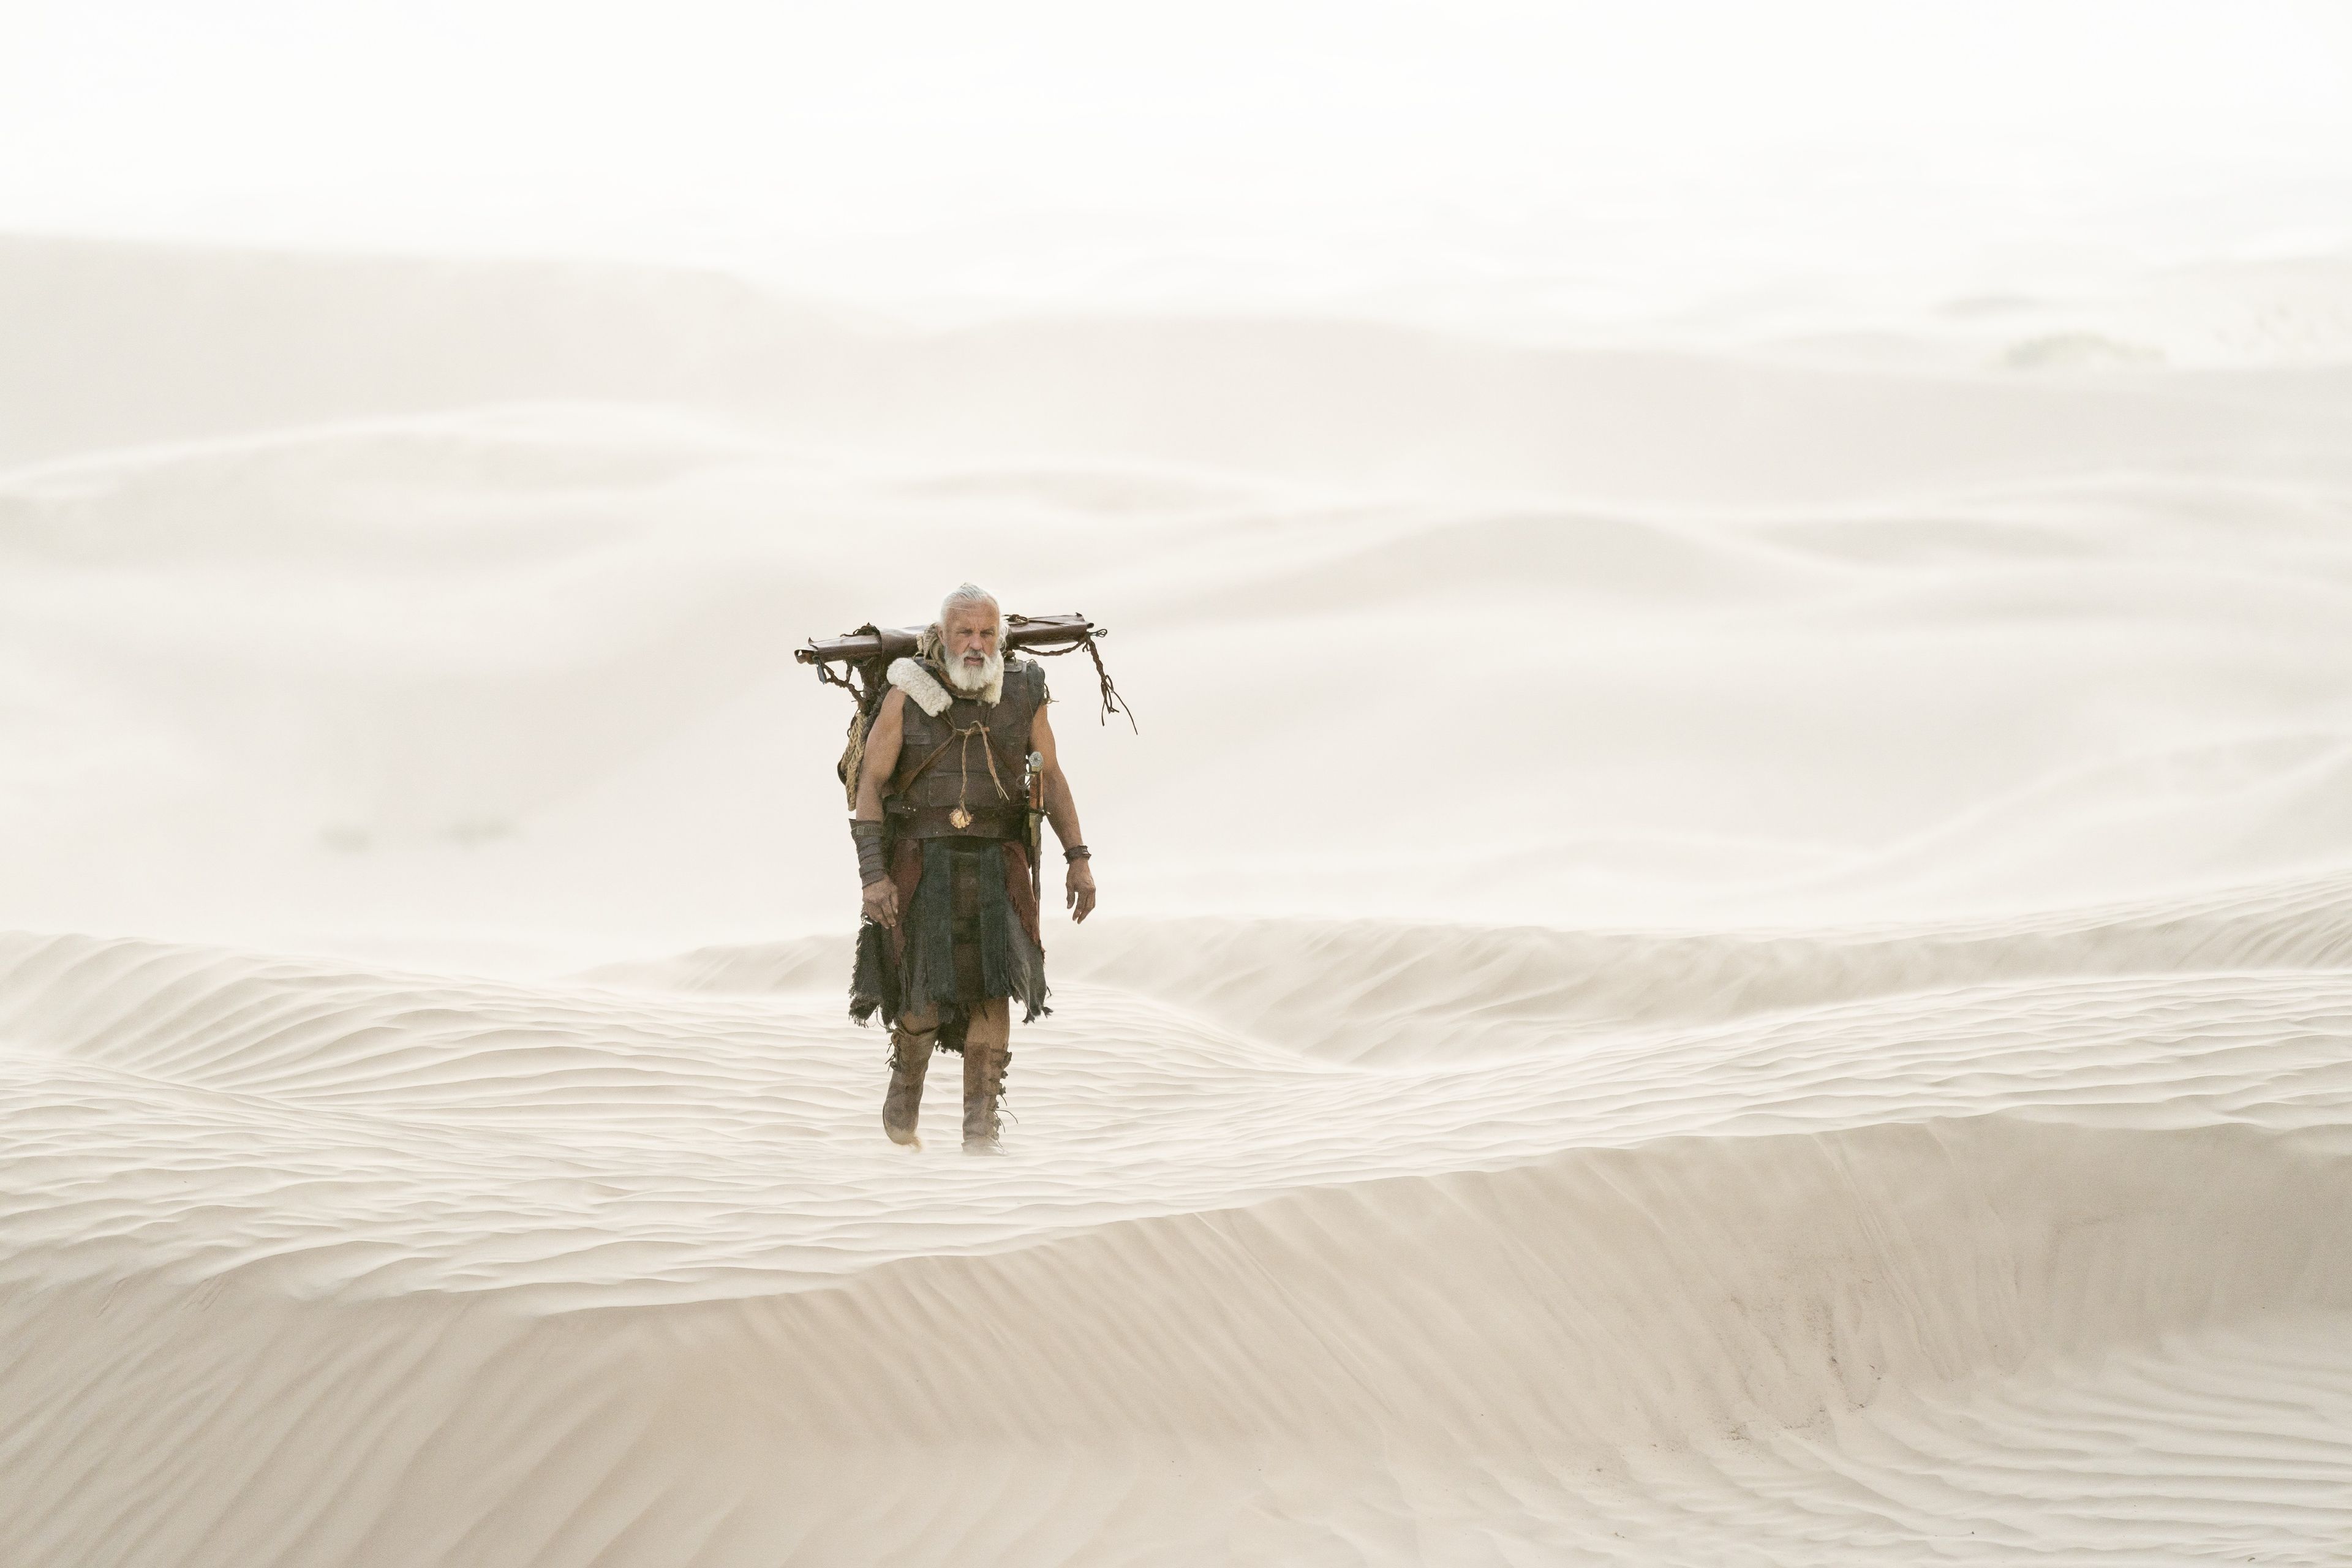 Moroni, son of Mormon, travels through the desert.